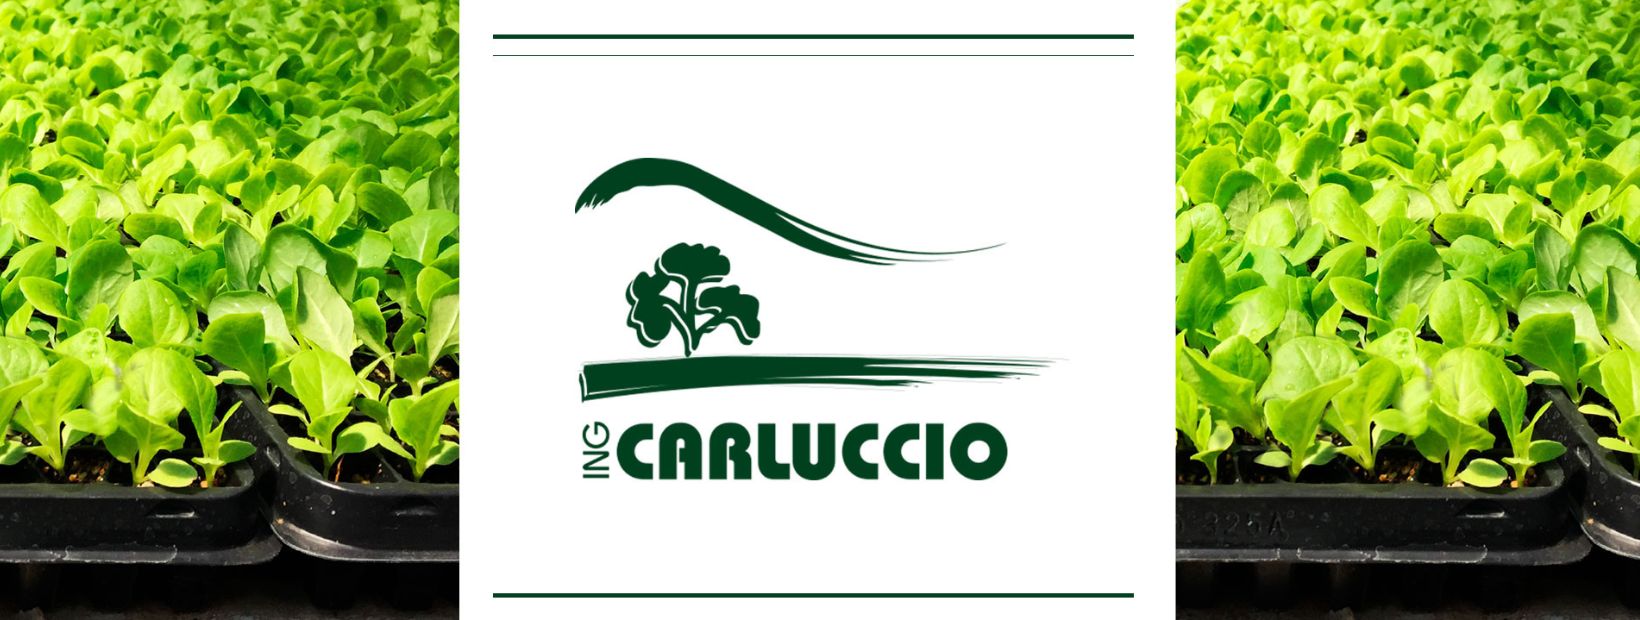 Ing. Carluccio